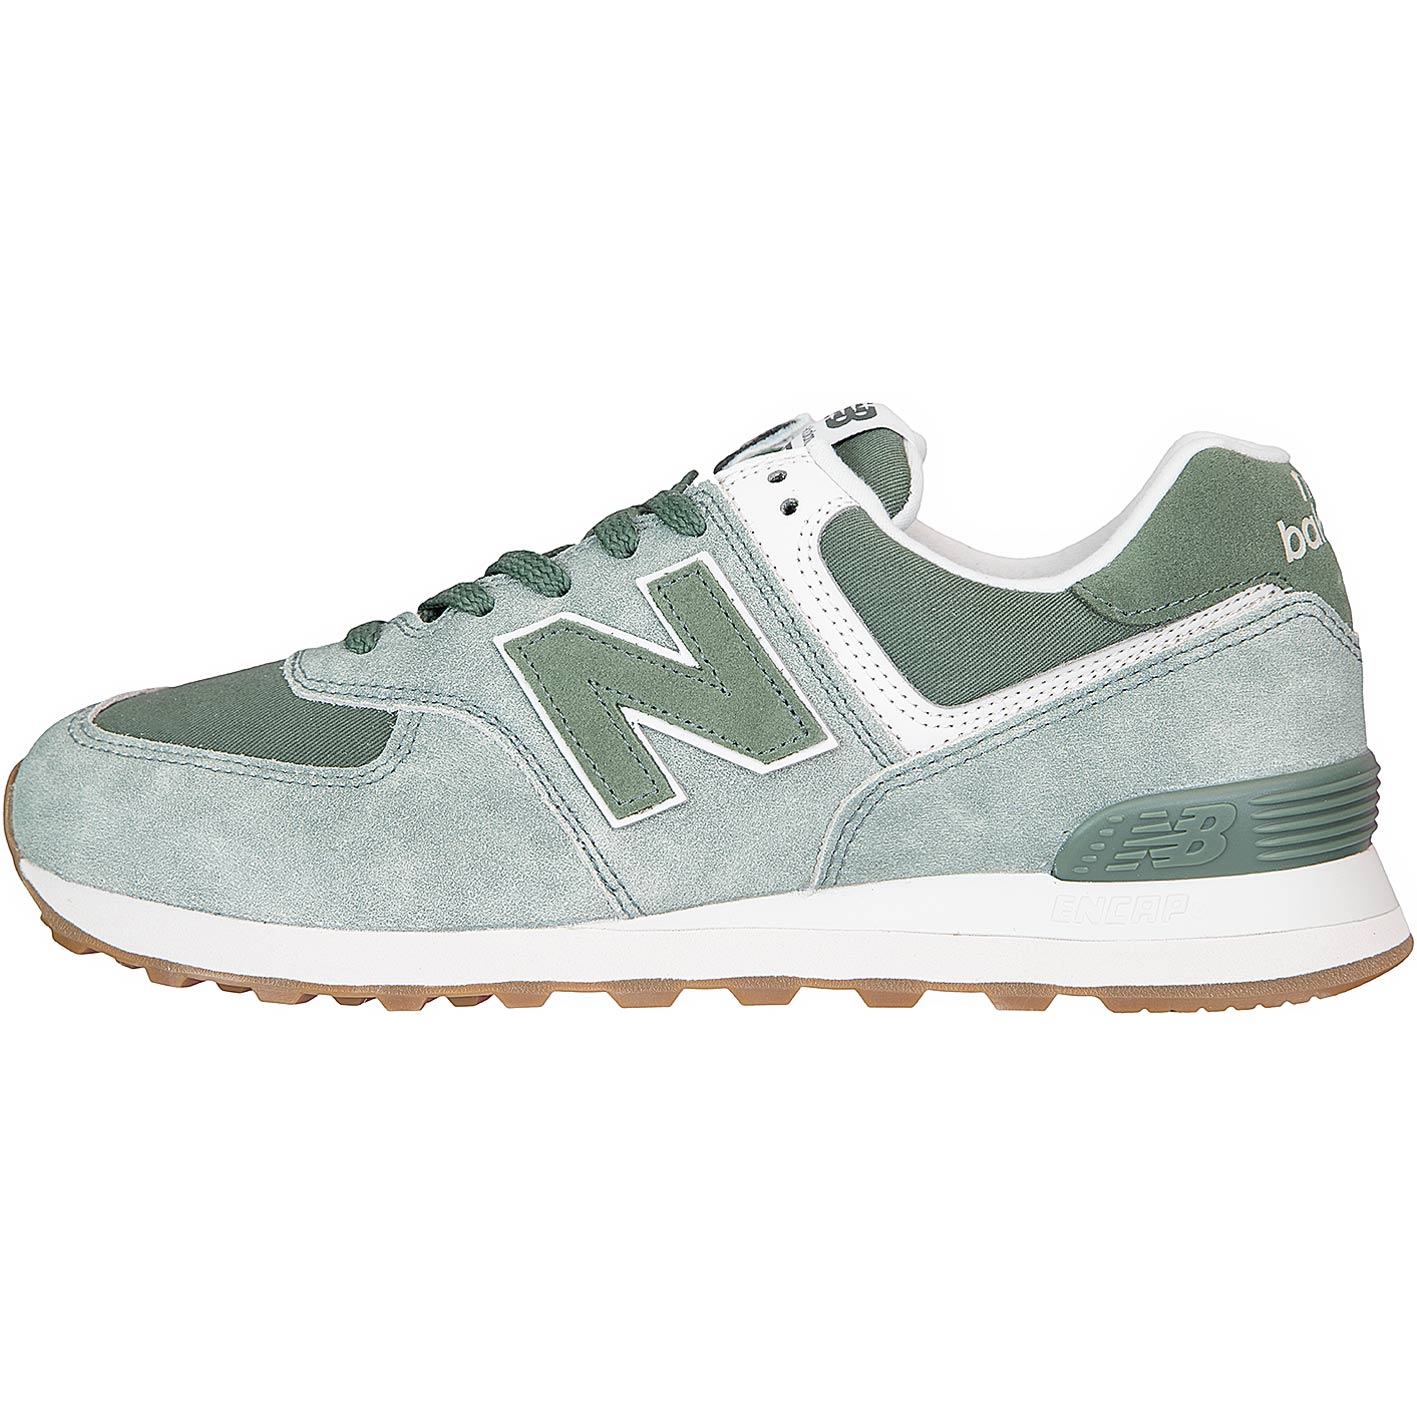 ☆ New Balance Sneaker 574 grün - hier bestellen!